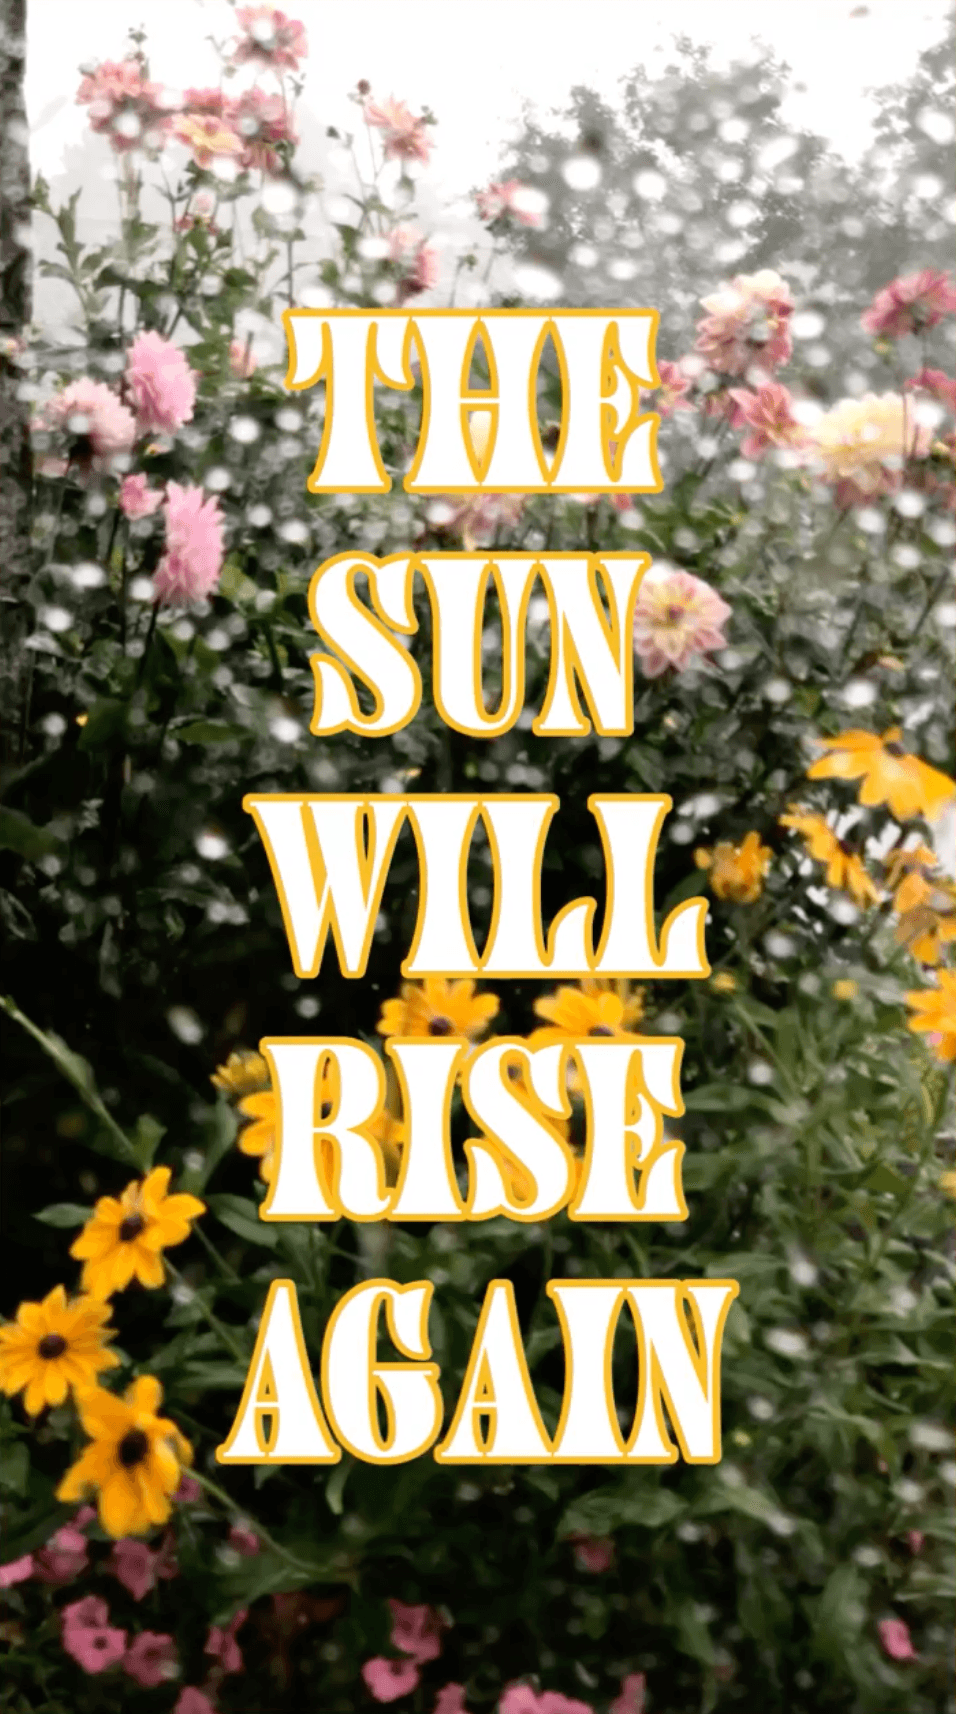 The Sun Will Rise Again